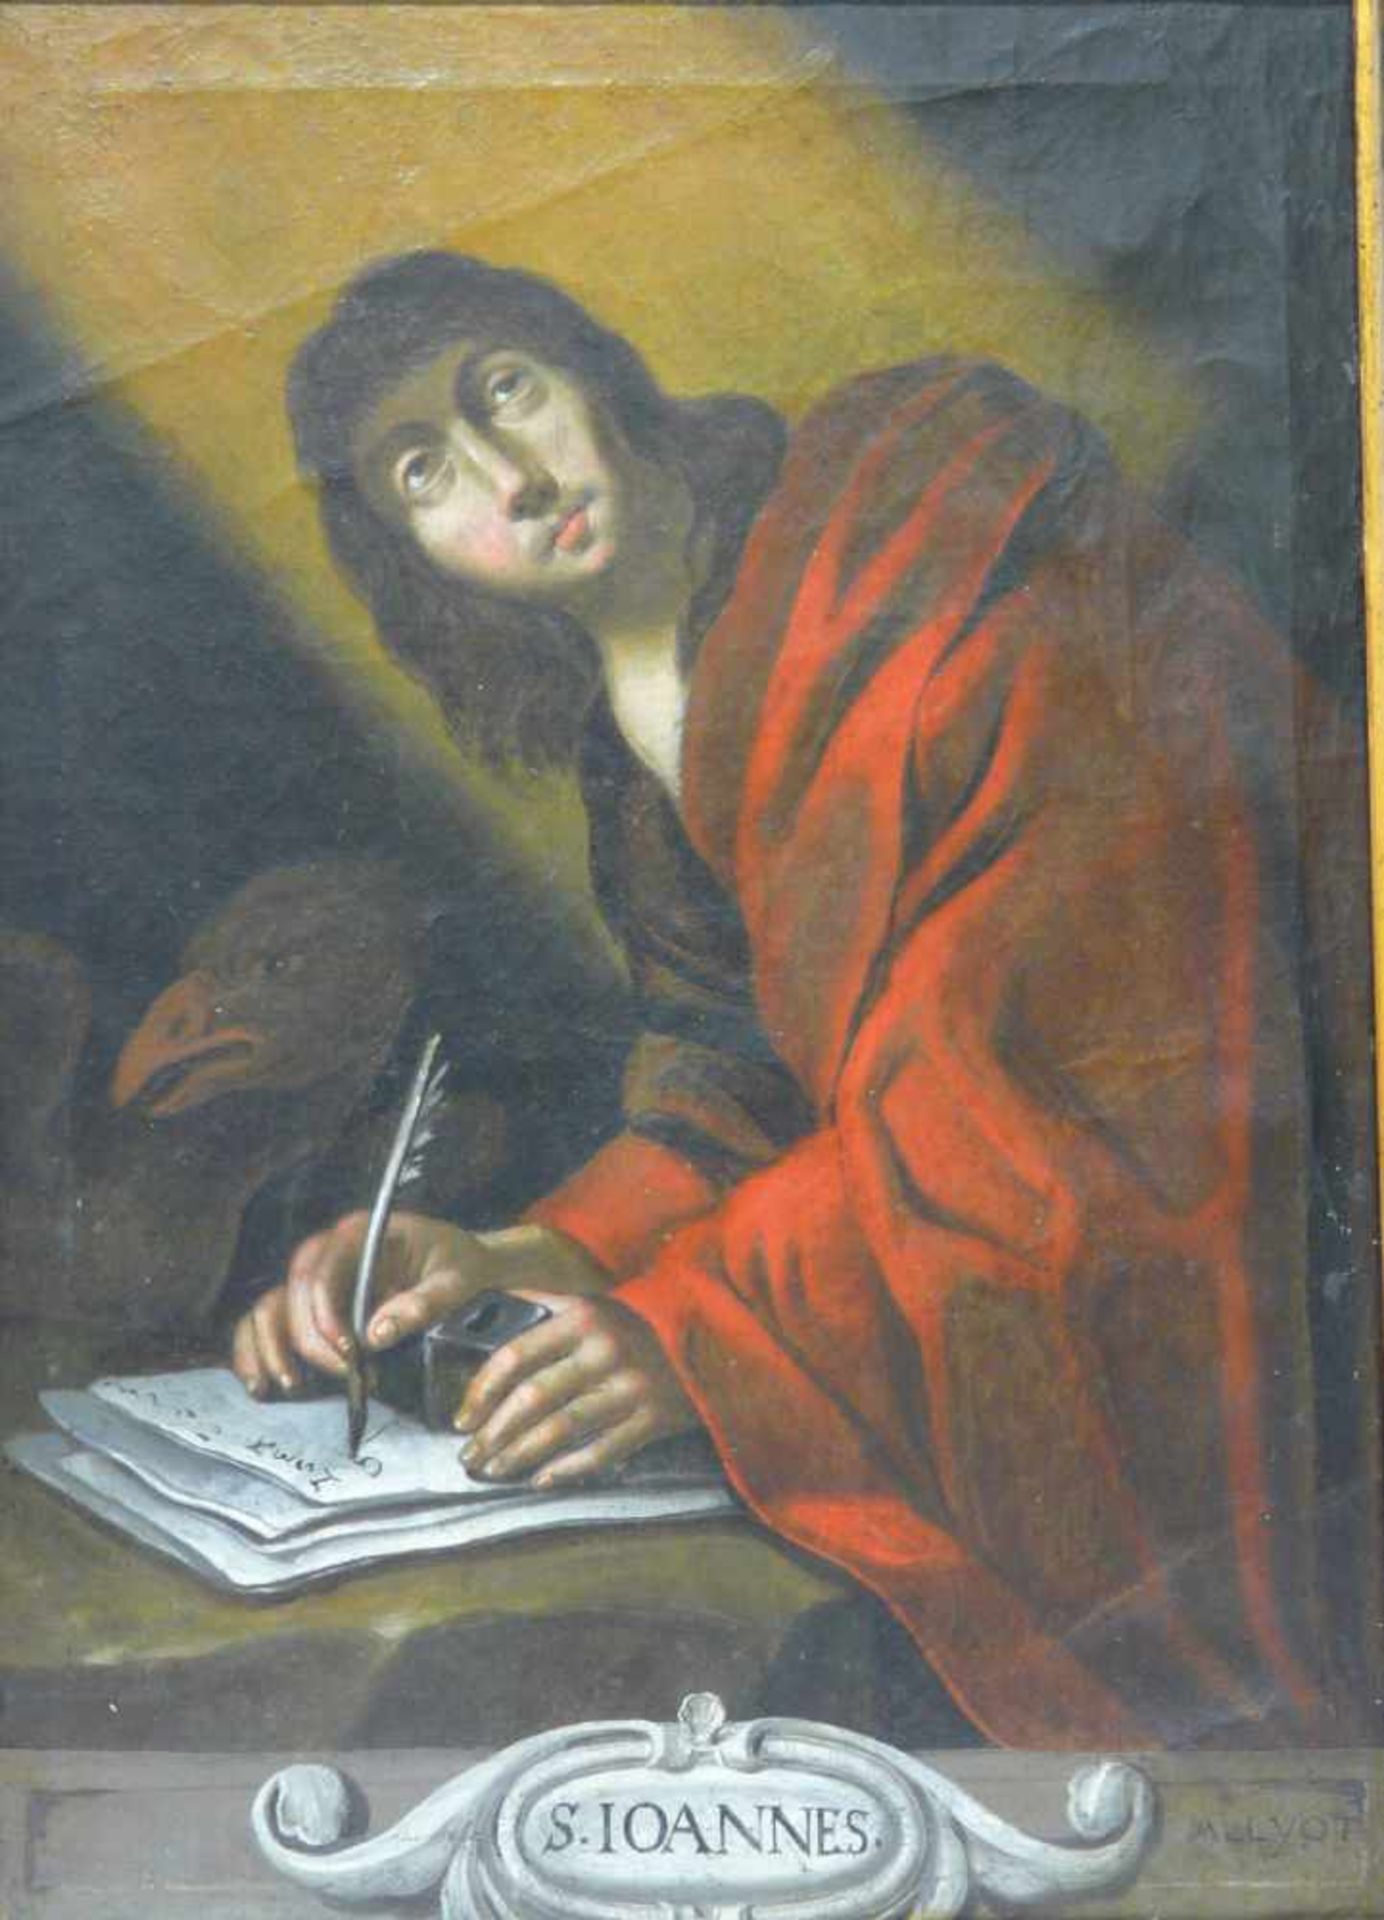 M. M. Llyot, Der Evangelist Johannes in der Schreibstube M. M. Llyot: Nicht verifizierter